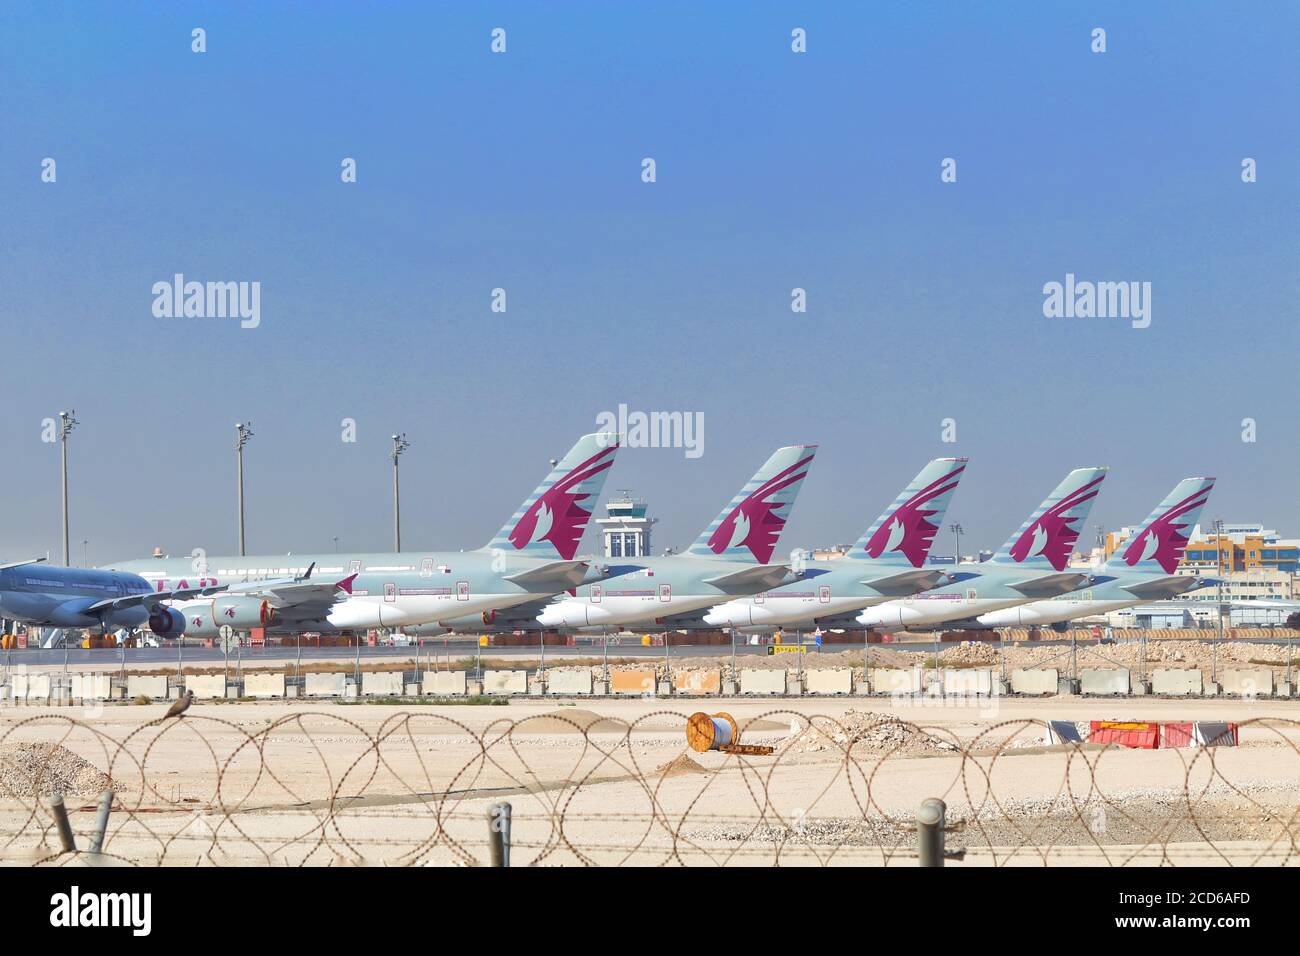 Qatar Airways è una delle compagnie aeree leader nel mondo con oltre 180 destinazioni in tutto il mondo. Foto Stock